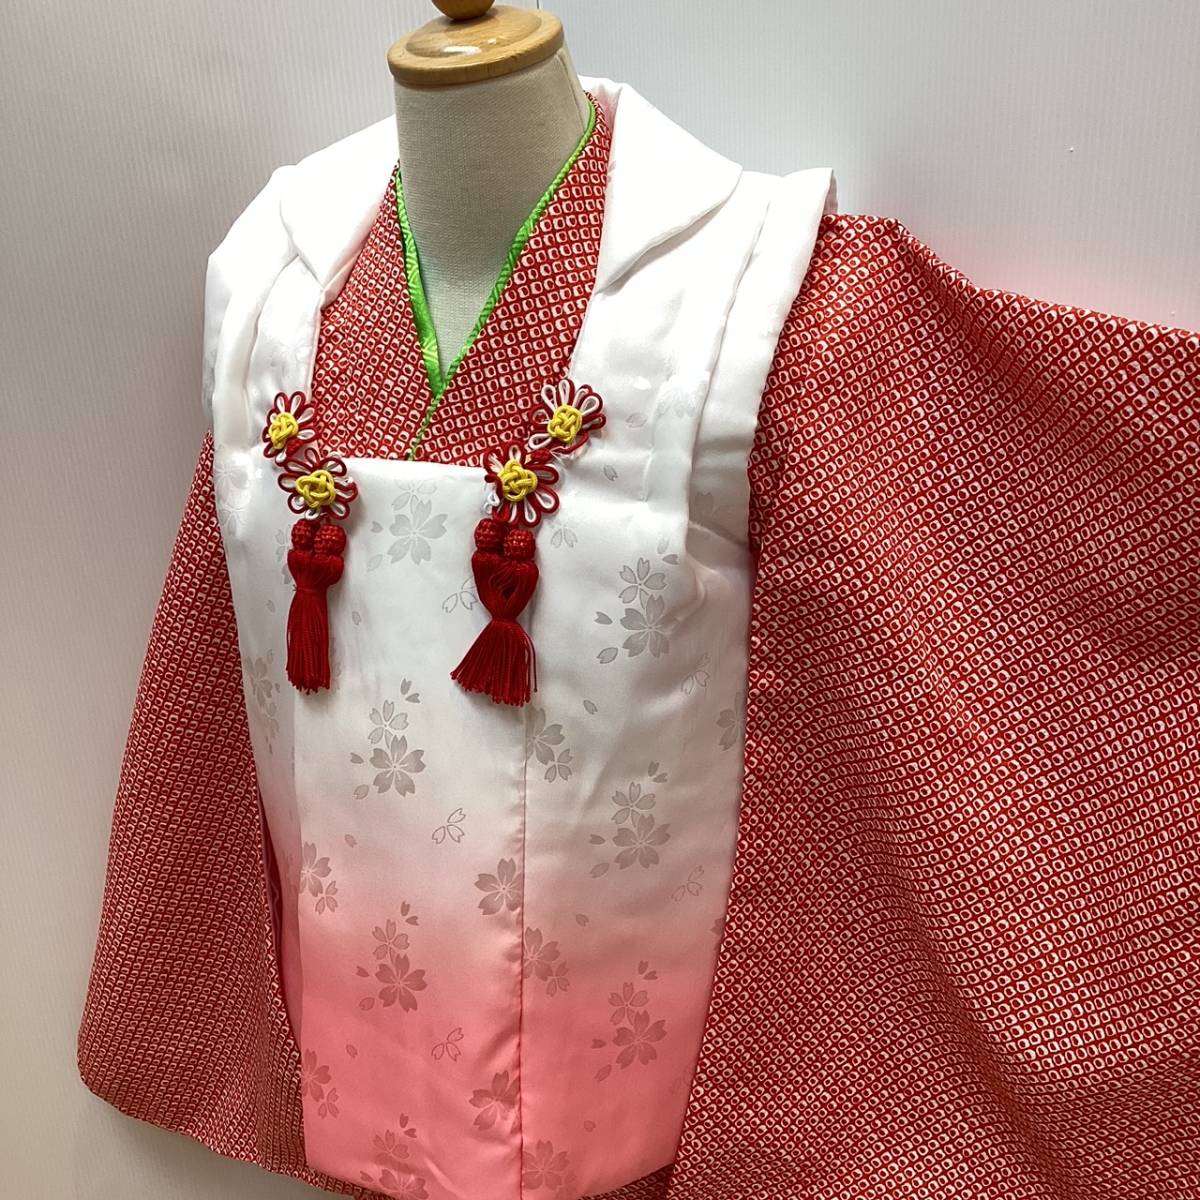  "Семь, пять, три" кимоно mi228t 3 лет . ткань пальто .. рисунок белый розовый bokashi сделано в Японии новый товар включая доставку 